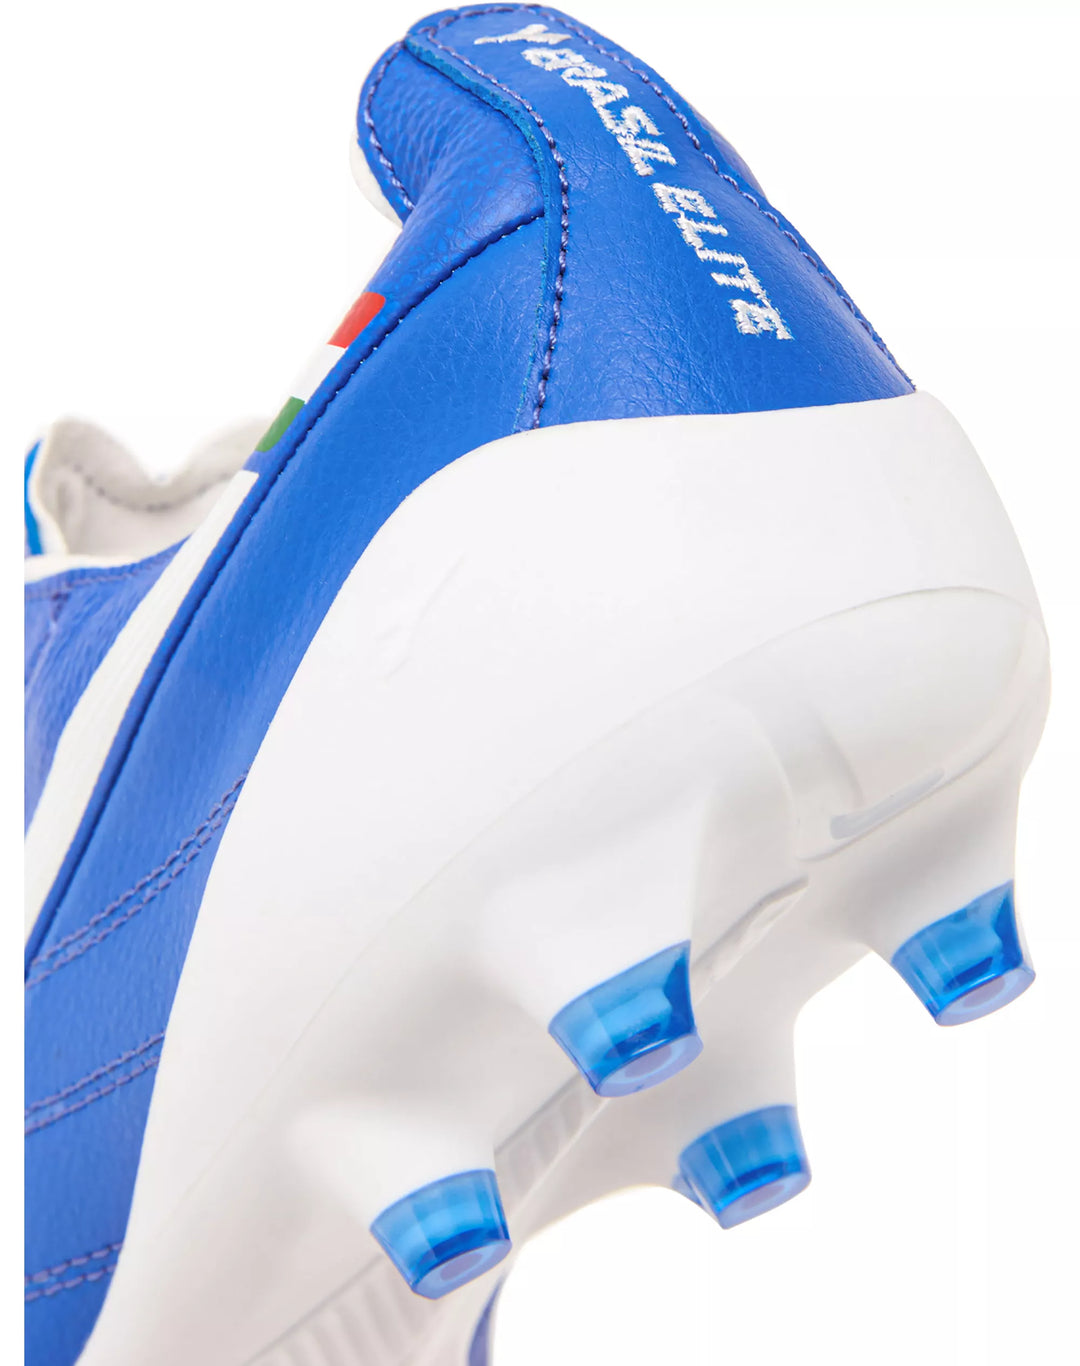 Botas de fútbol para superficies firmes Diadora Brasil Elite 2 Tech ITA LPX FG Azul/Blanco 